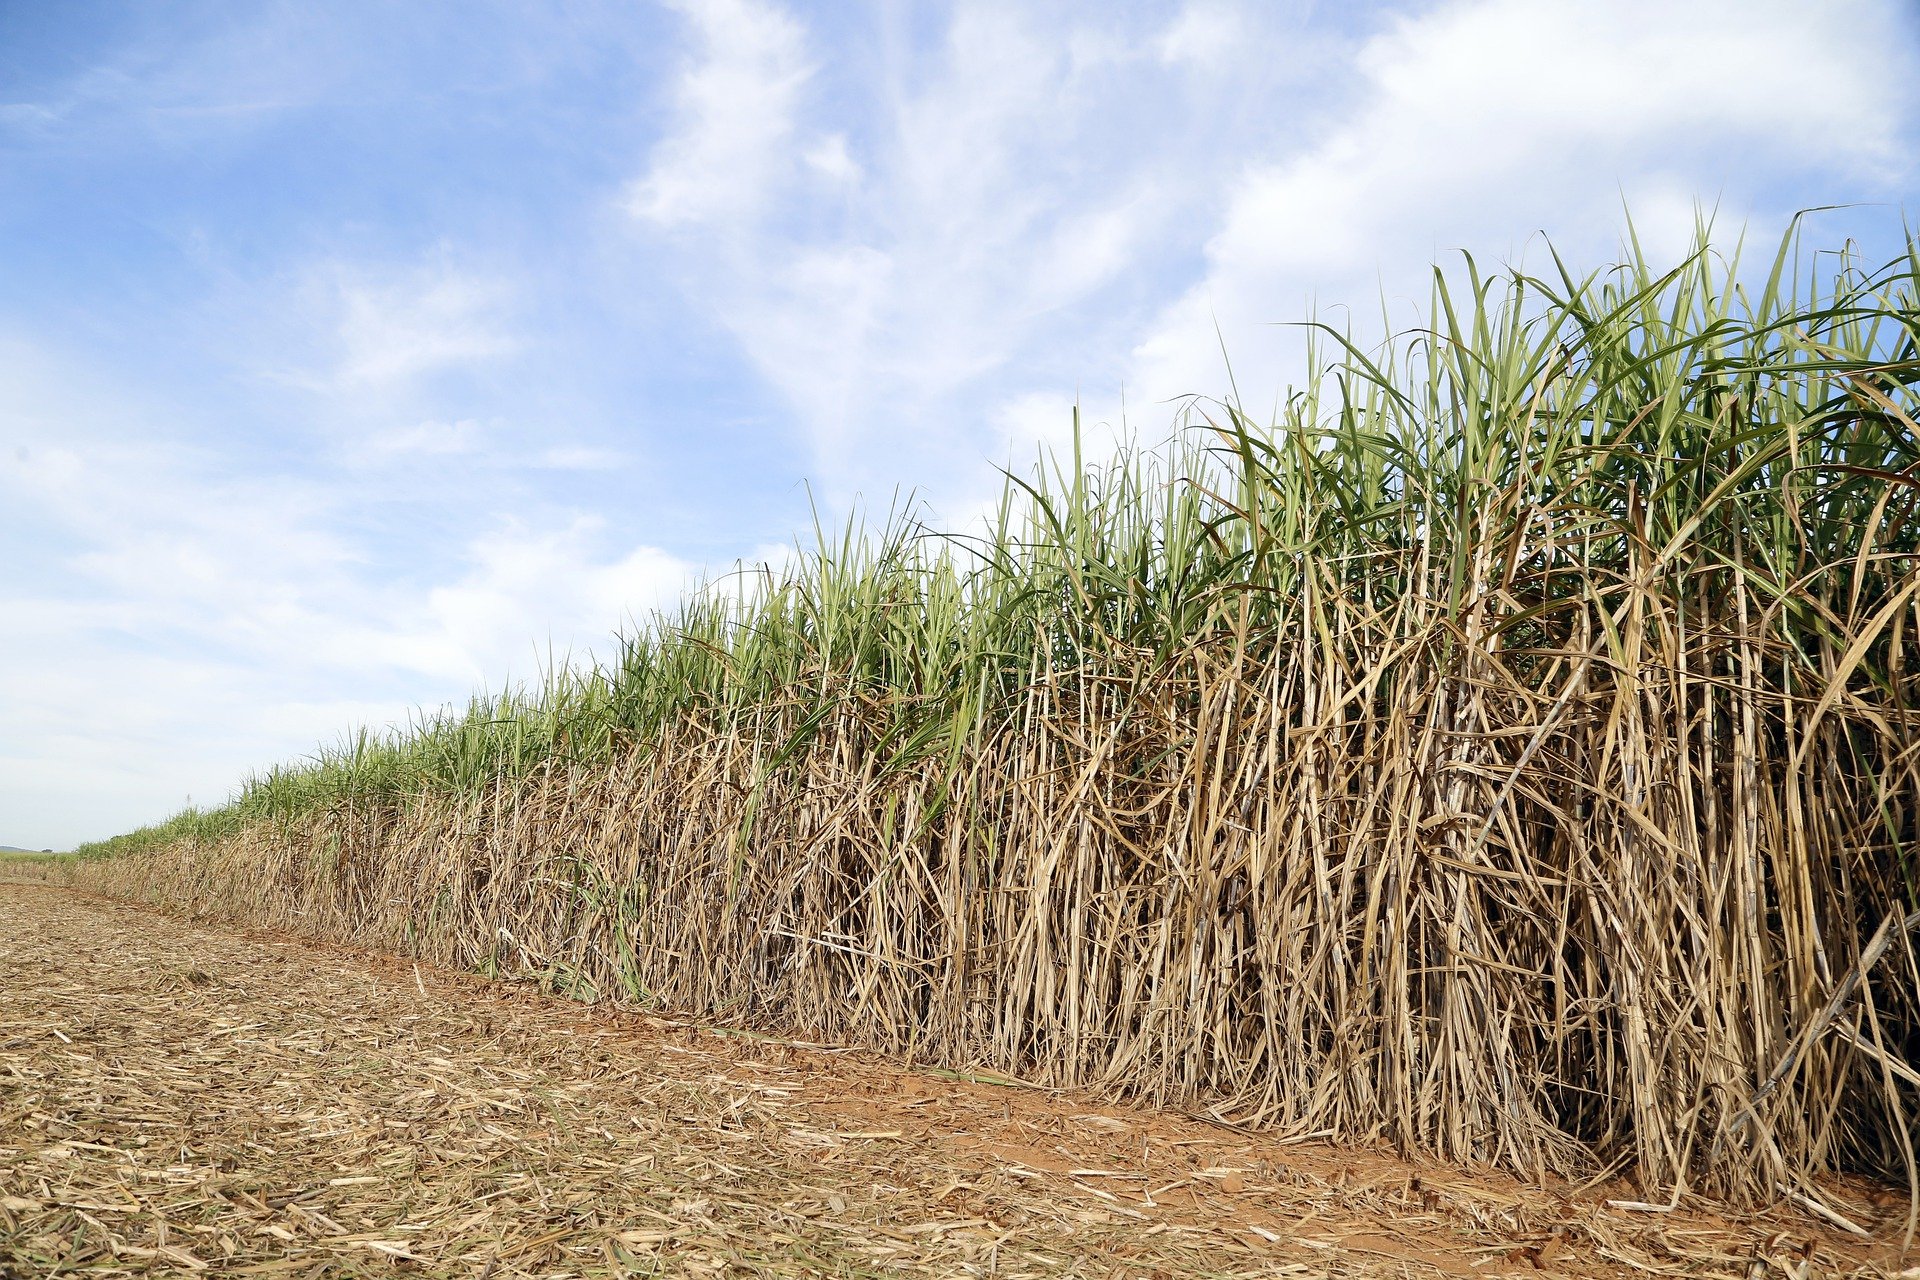 Б сахарный тростник. Сахарный тростник в Бразилии. Сельское хозяйство Бразилии сахарный тростник. Плантации сахарного тростника в Бразилии. Сахарный тростник в Луизиане.